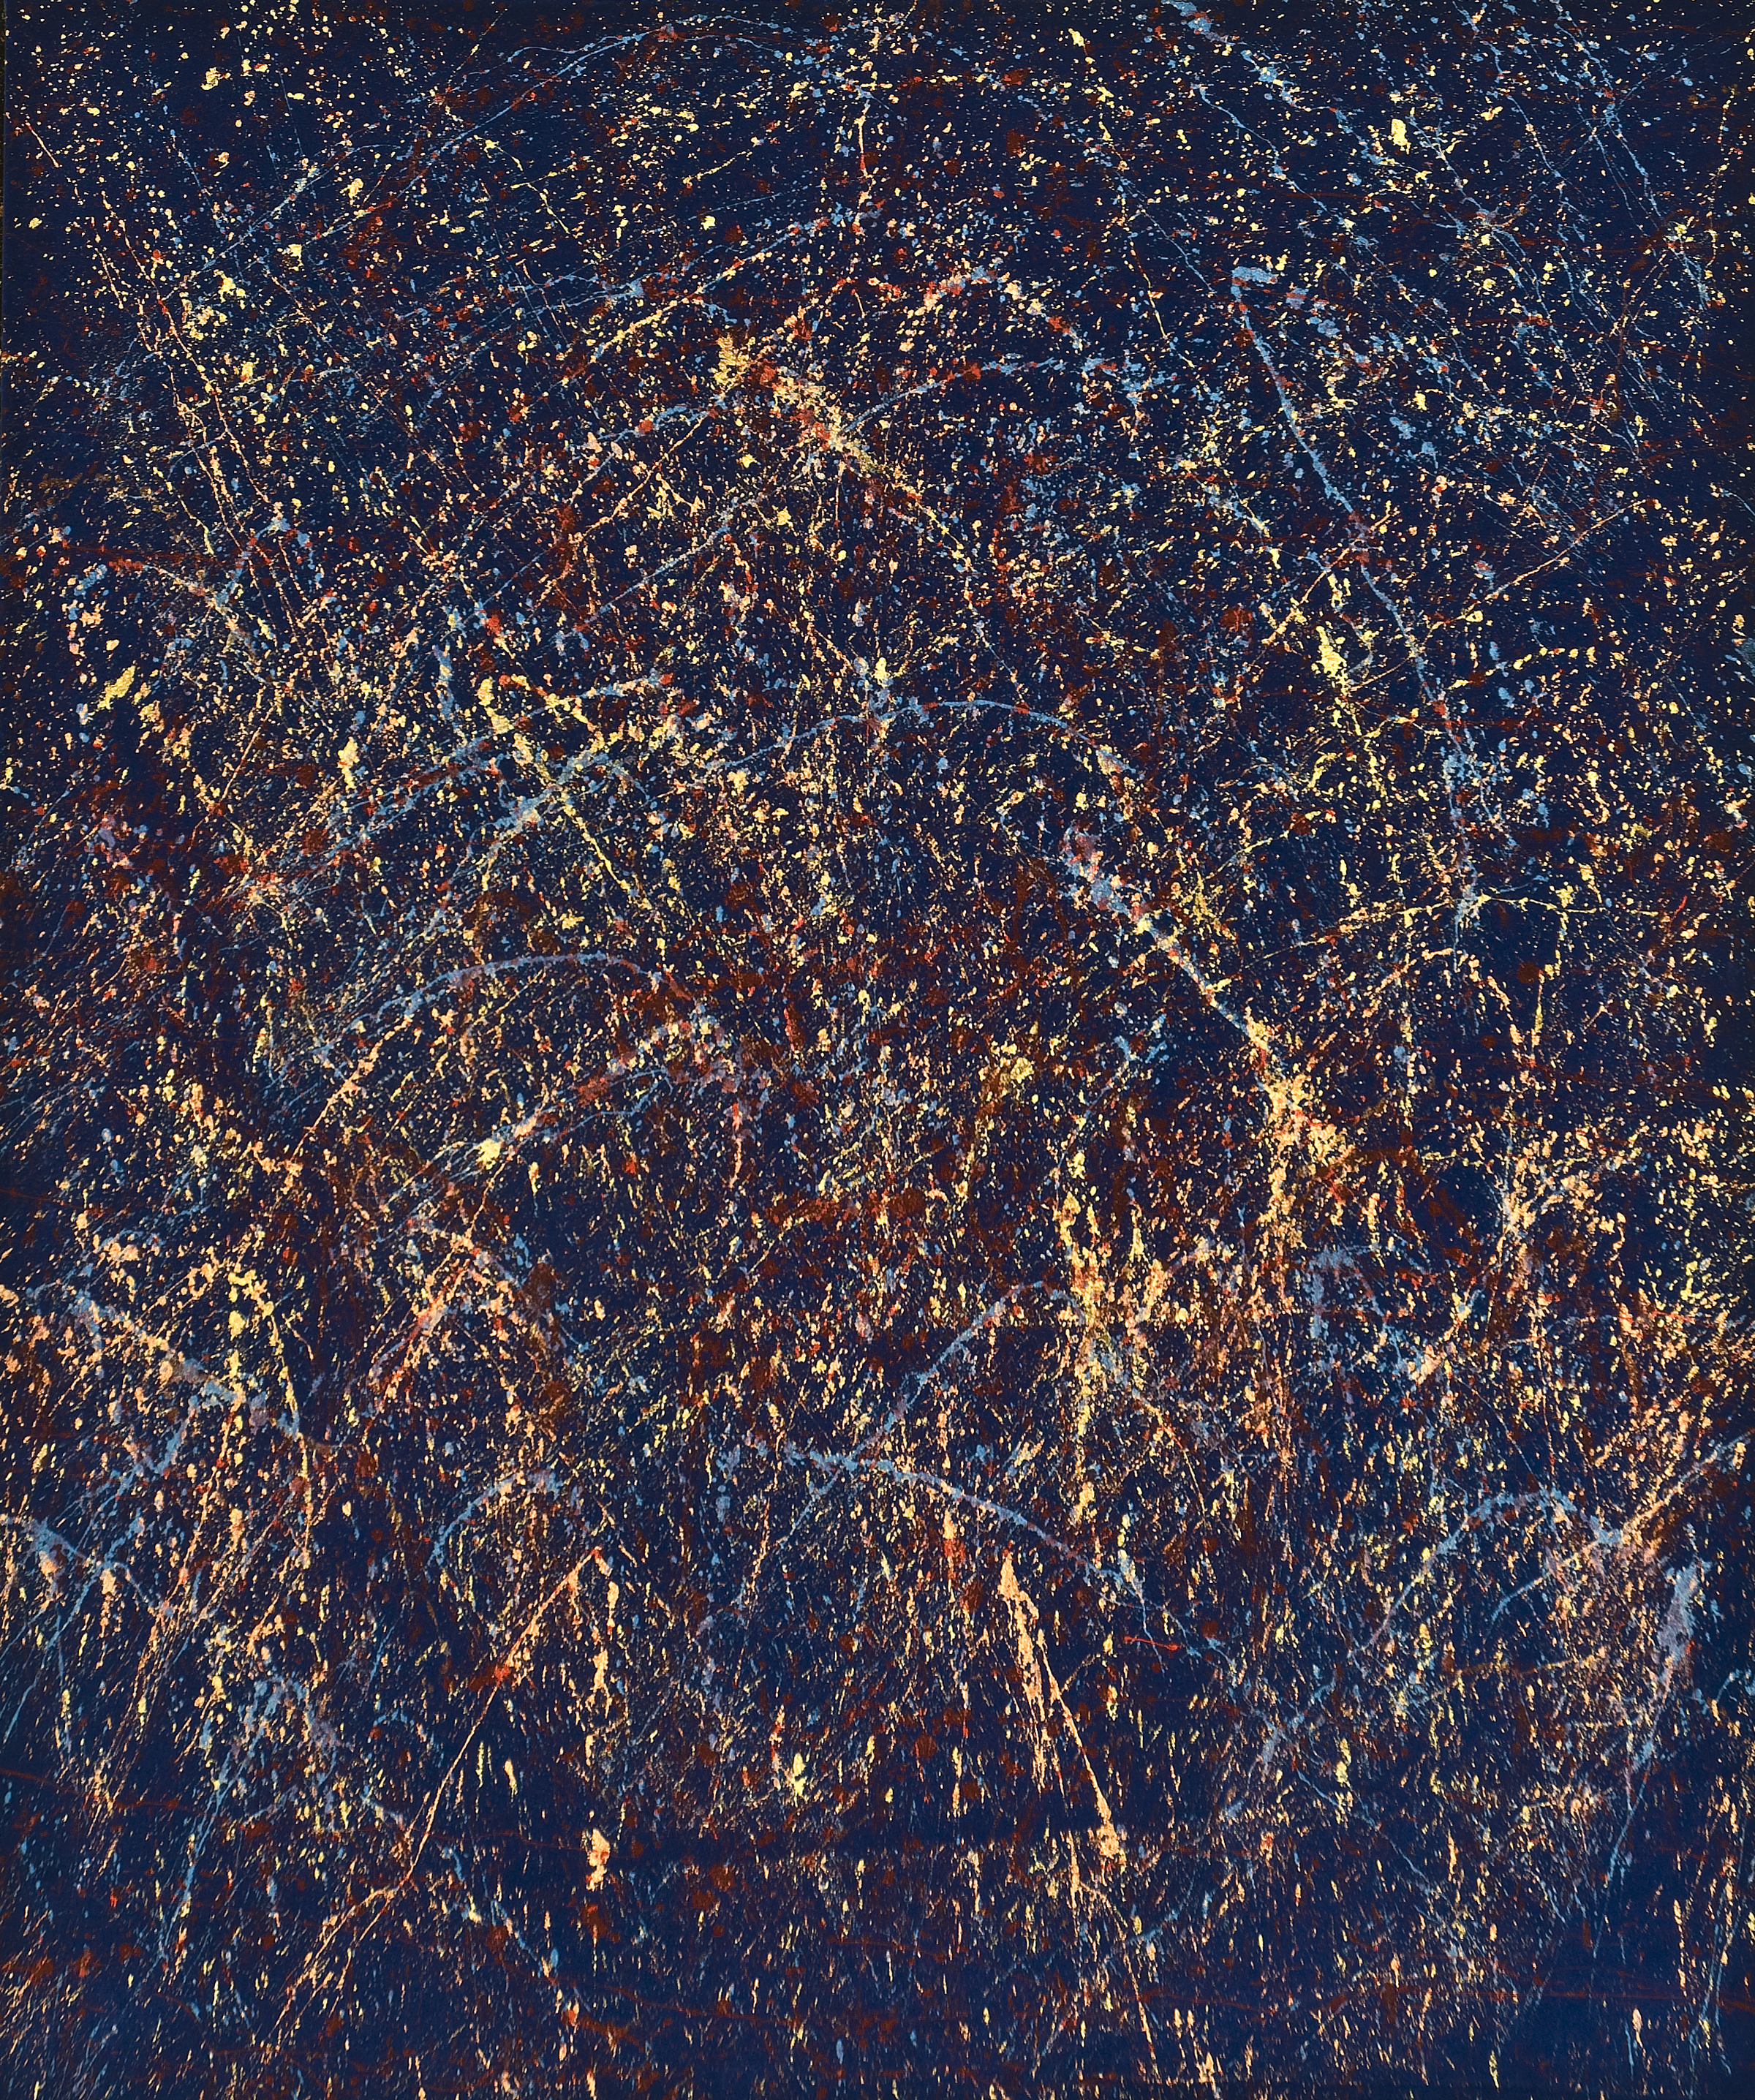  Sterne VII, 2014, 120 cm x 100 cm, Metallpigmente auf Samt